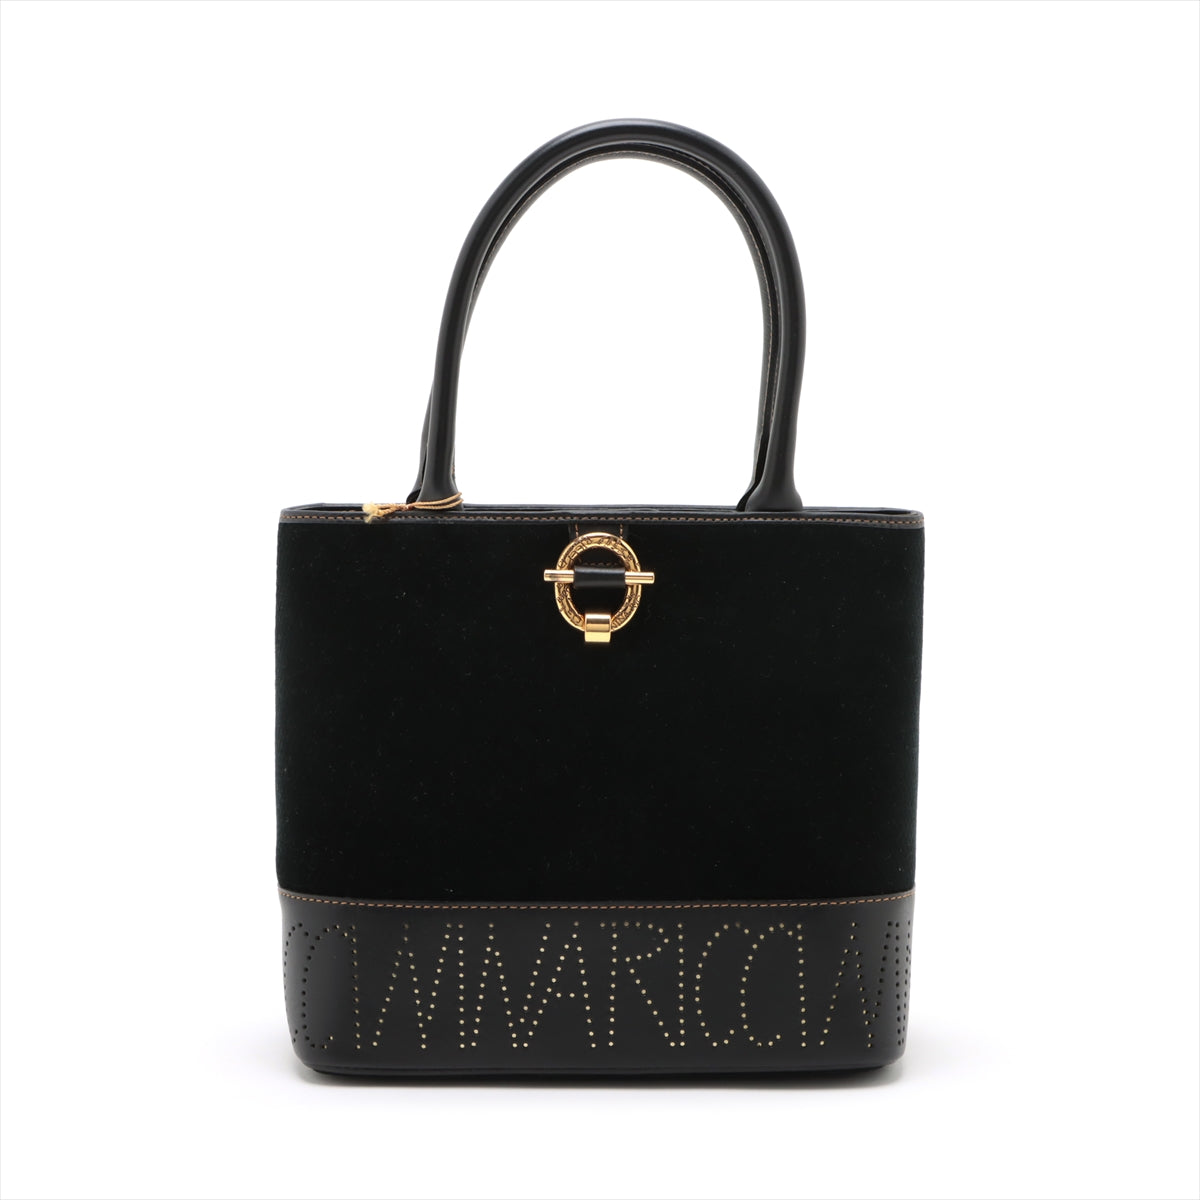 Black Handbag Black Handbag Black Handbag Black Handbags